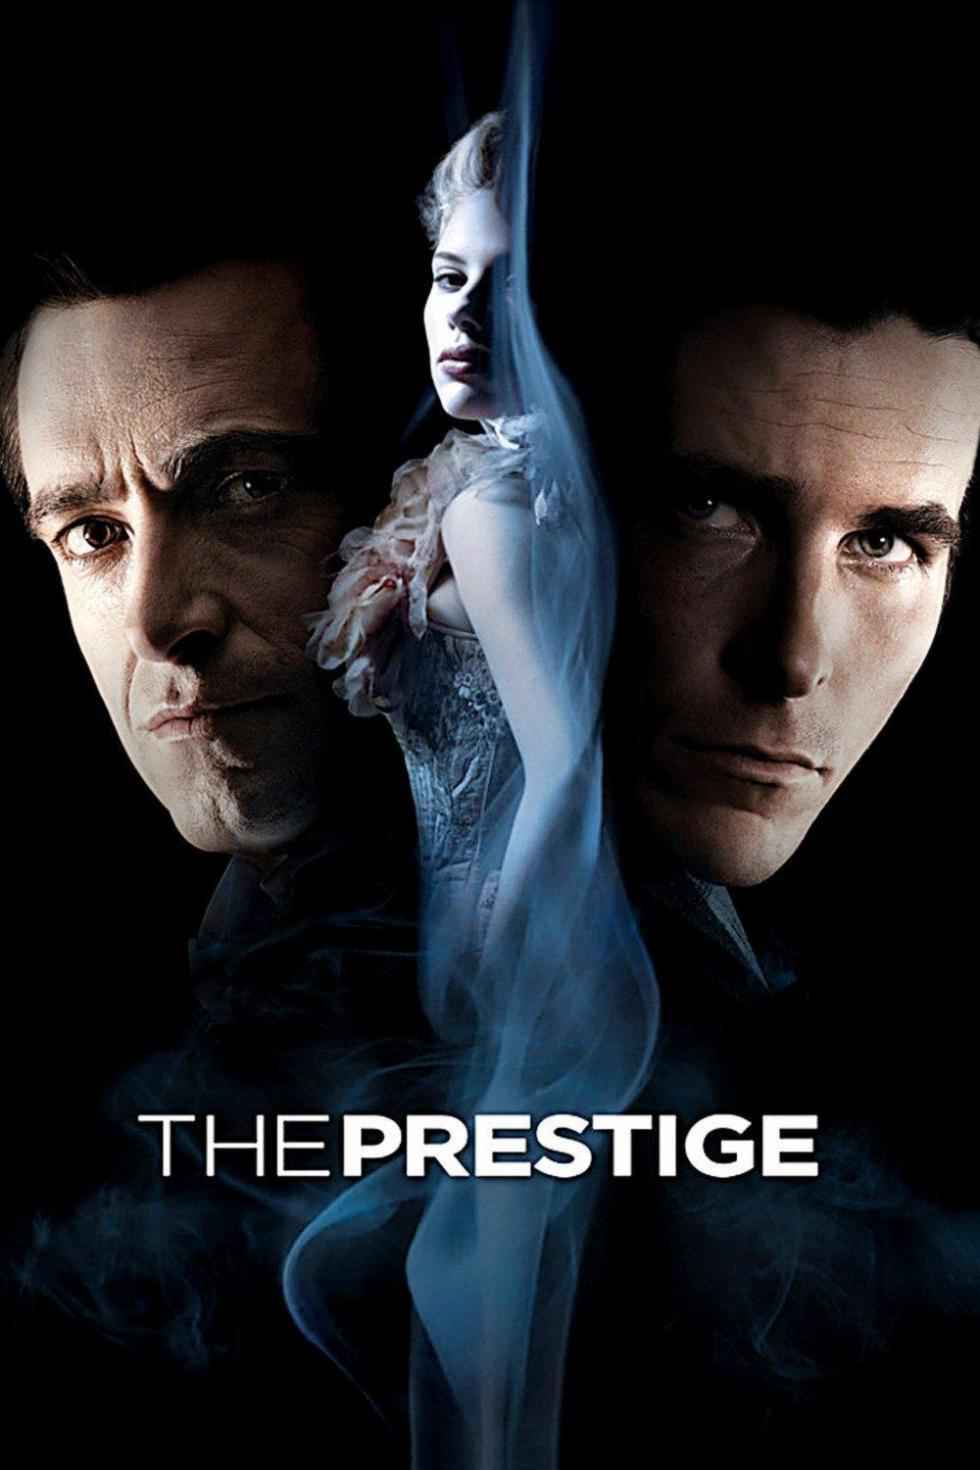 [高分悬疑惊悚电影][致命魔术.頂尖對決.死亡魔法.The Prestige][2006][英语国语音轨.中英双语字幕][蓝光版]720P+1080P+2160P百度云下载